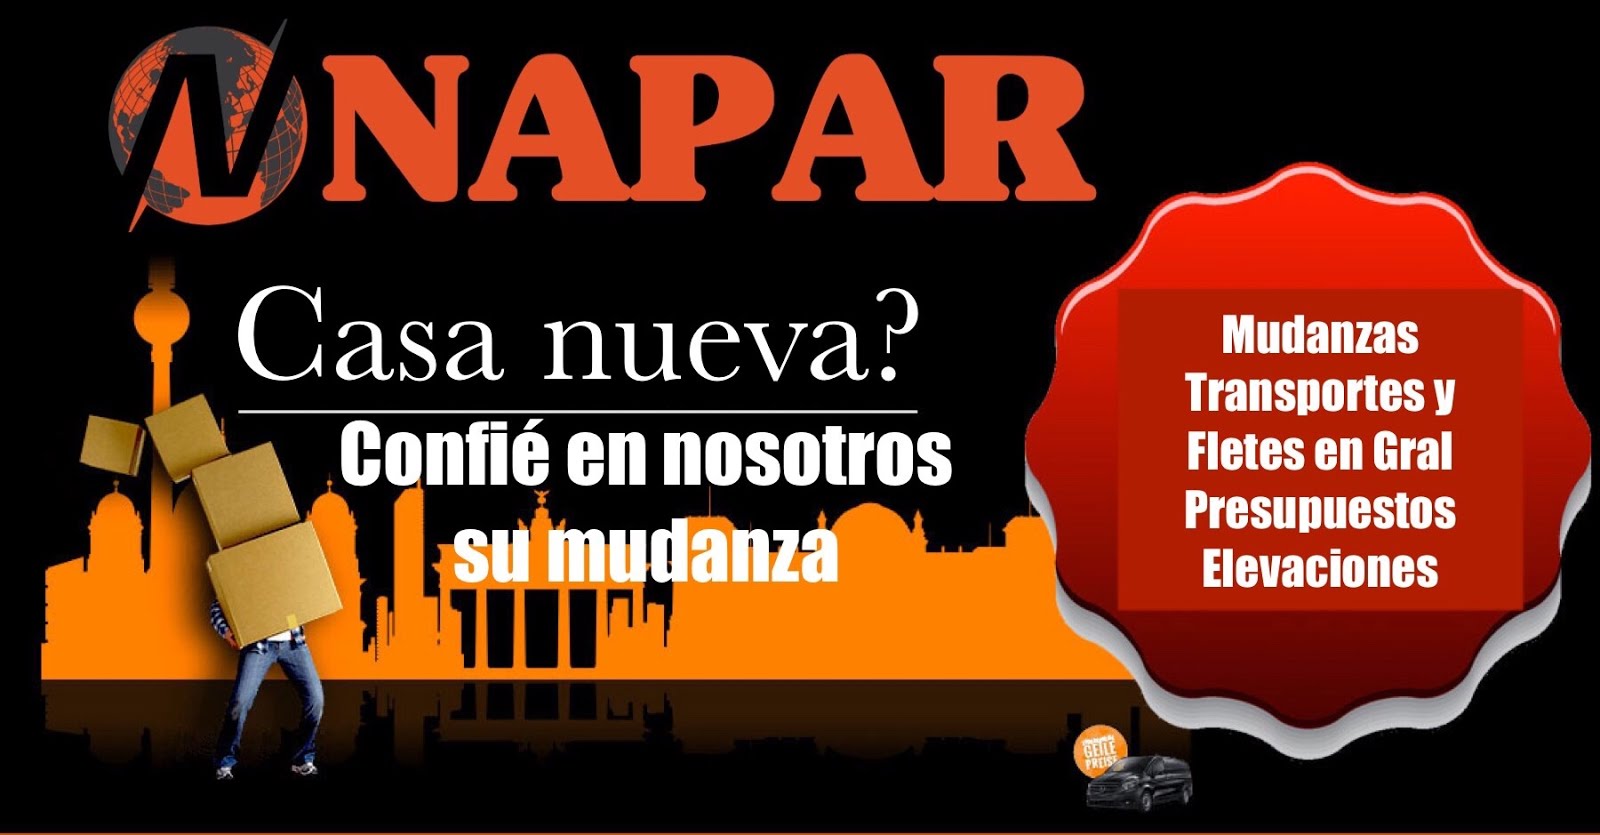 NAPAR moves - Mudanzas y Transportes - Cel. 094 6000 25(whatsapp)